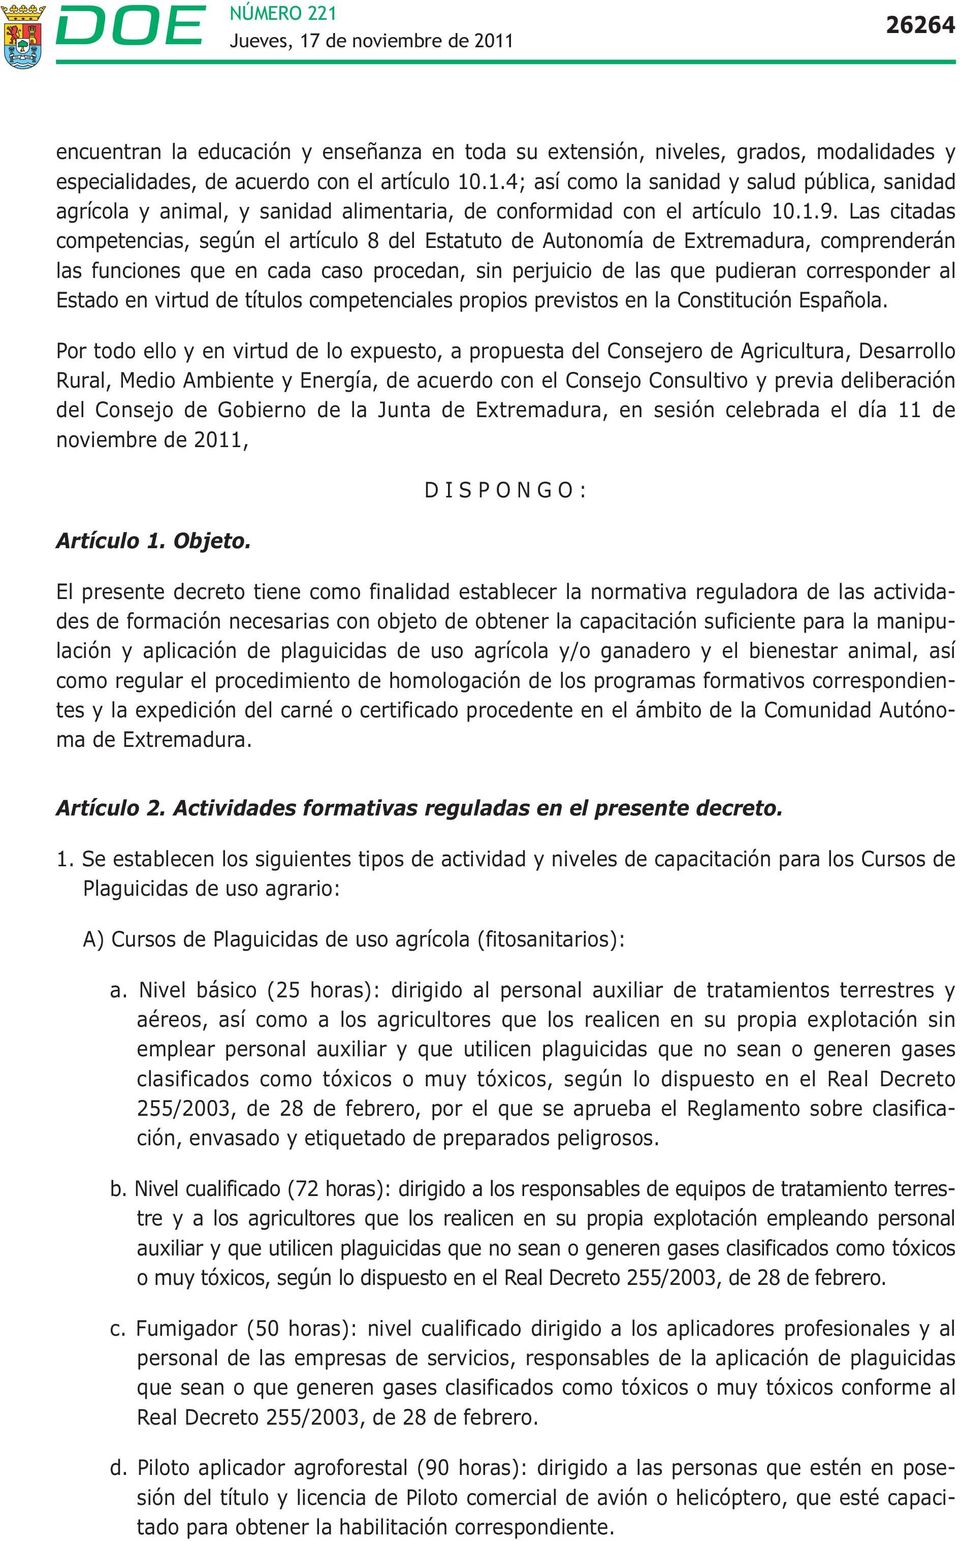 Las citadas competencias, según el artículo 8 del Estatuto de Autonomía de Extremadura, comprenderán las funciones que en cada caso procedan, sin perjuicio de las que pudieran corresponder al Estado